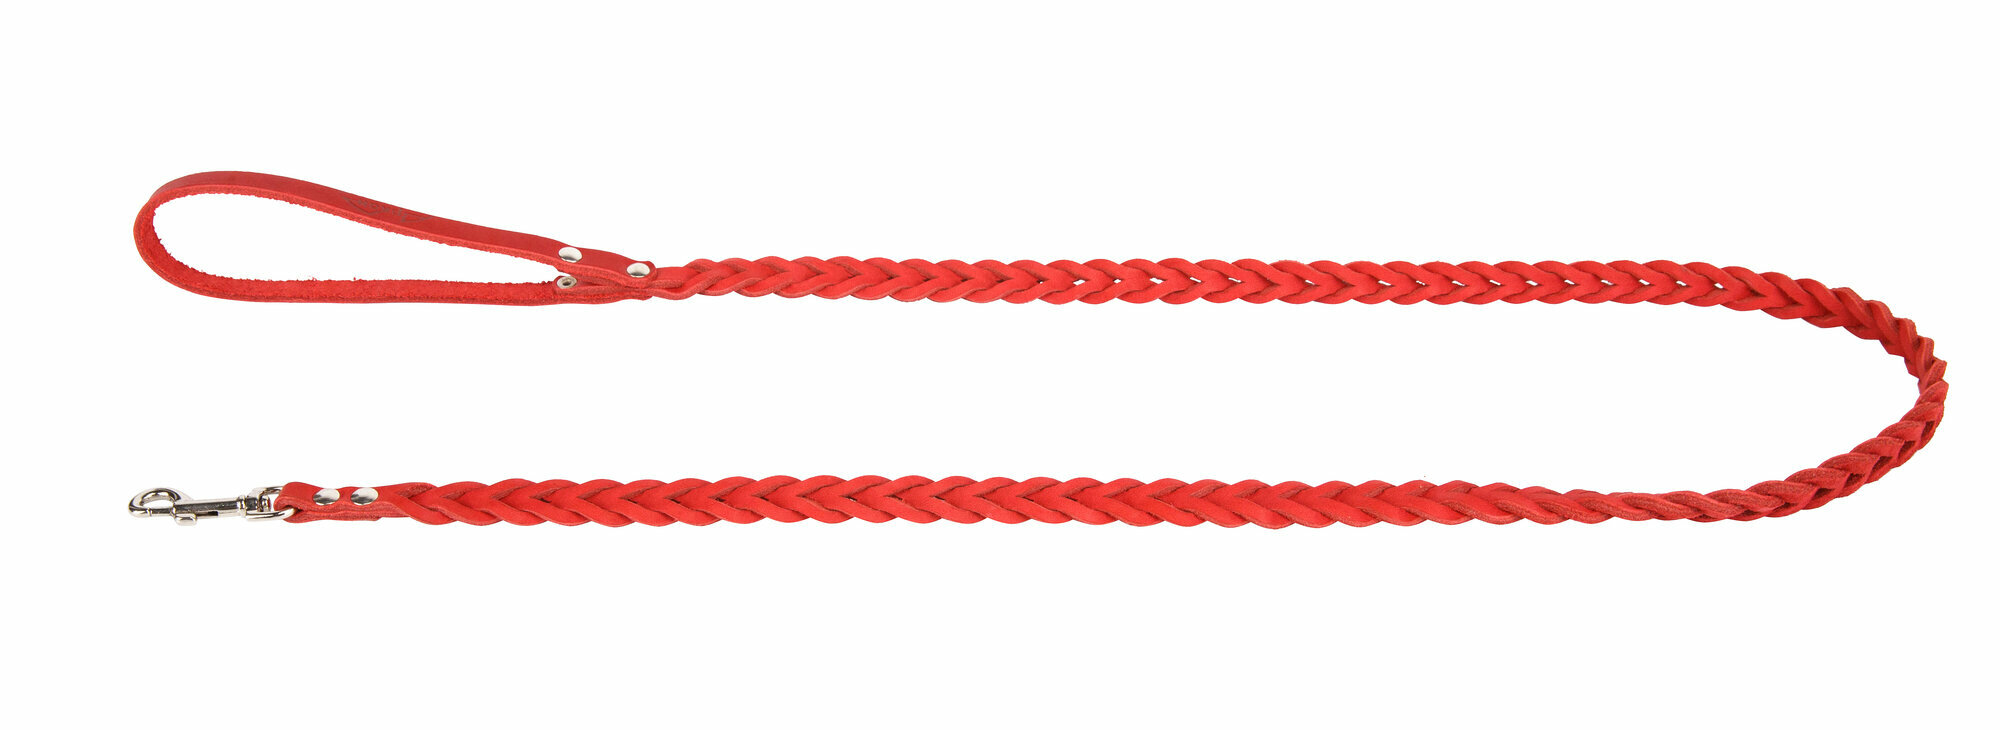 Поводок аркон кожаный 1.2м х 8мм плетение "Косичка", цвет красный